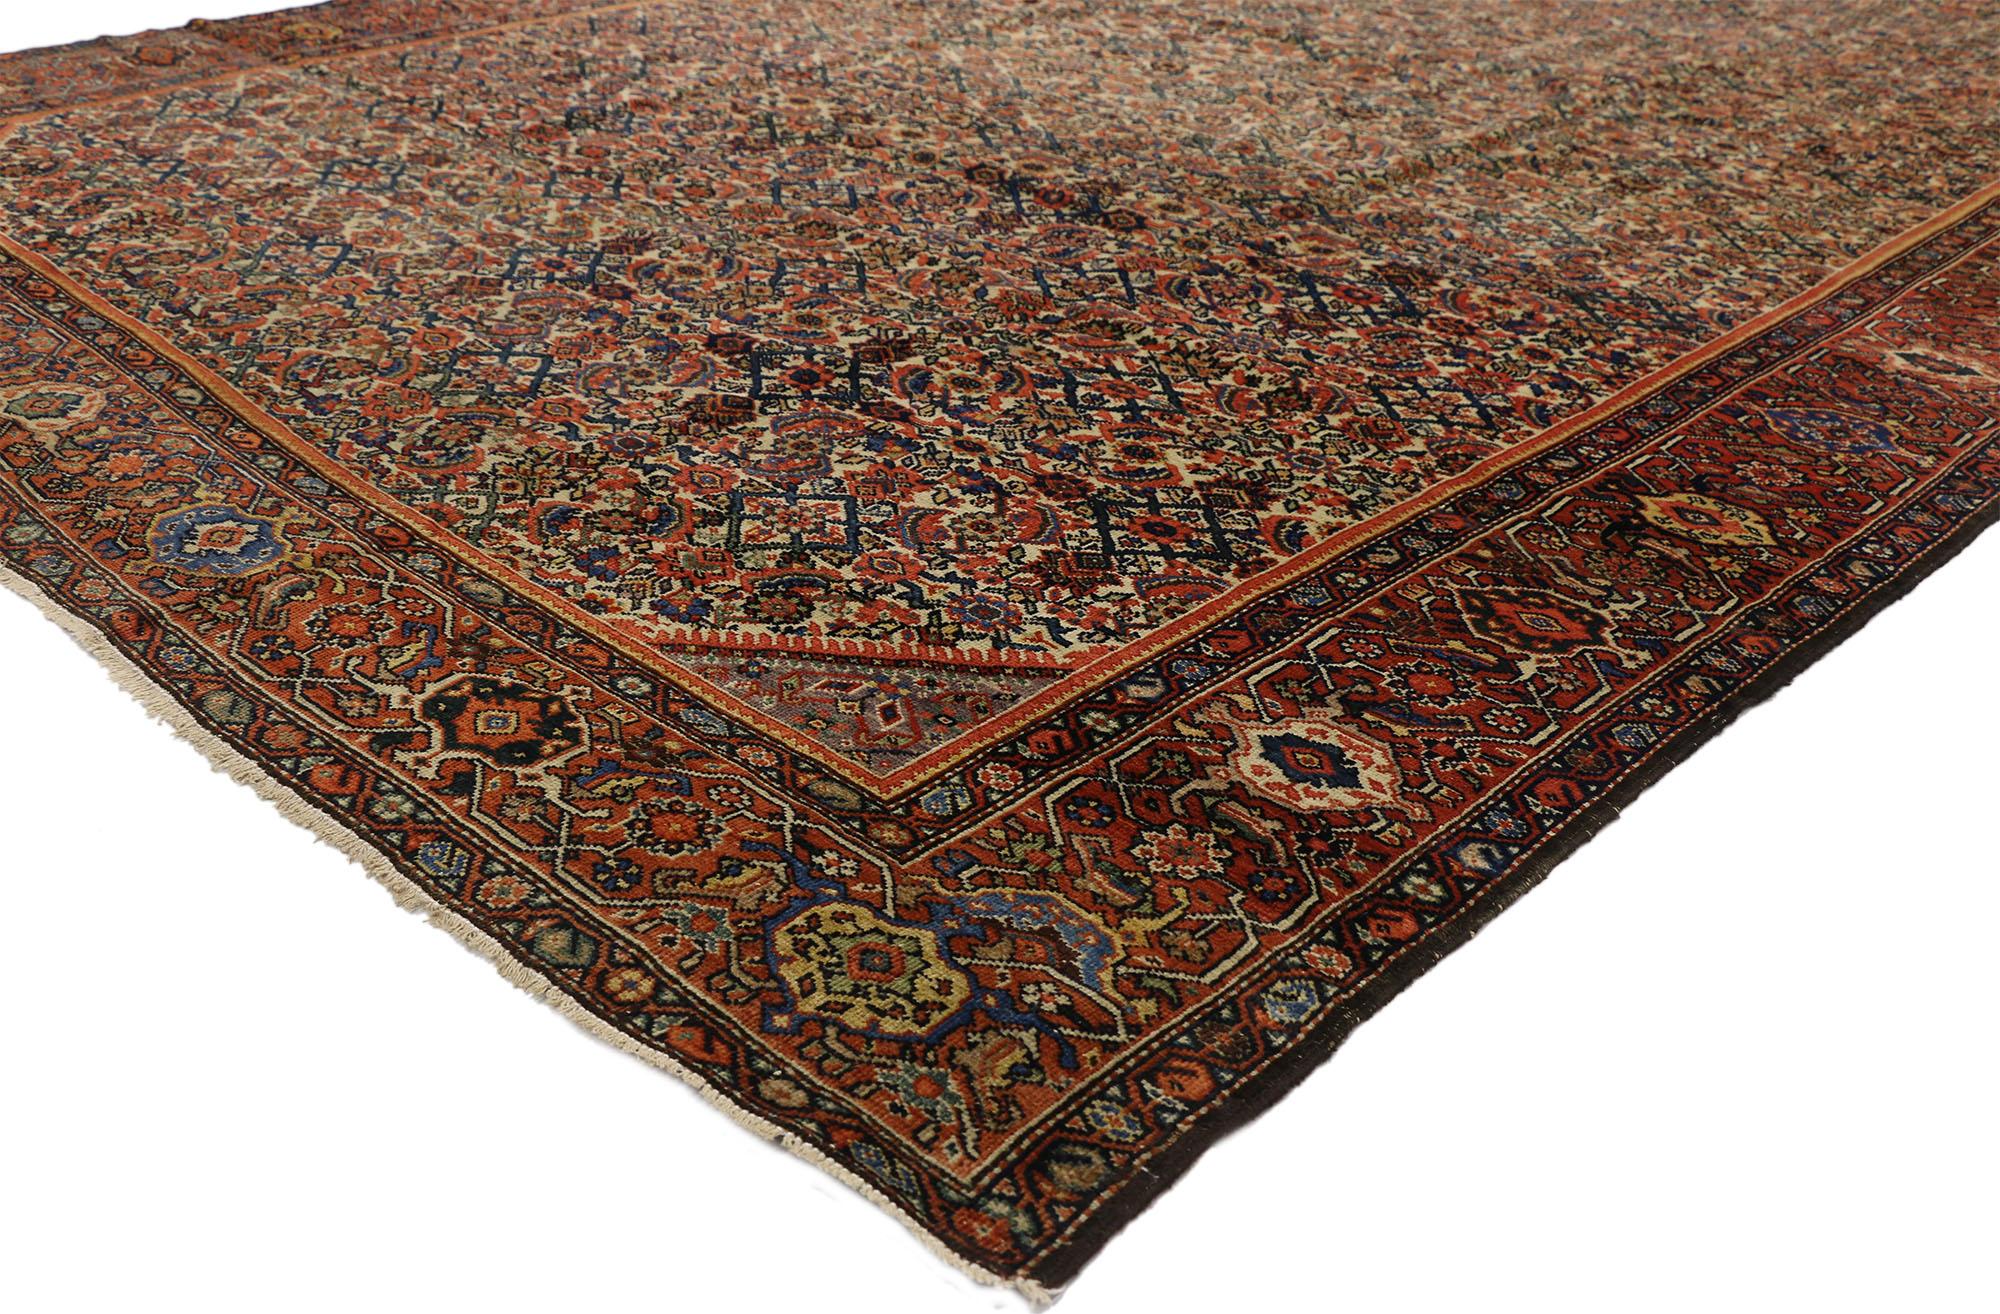 74035 Antiker persischer Farahan-Teppich aus dem späten 19. Jahrhundert im modernen, rustikalen englischen Stil, 07'07 x 12'04. Dieser raffinierte und charaktervolle antike persische Farahan-Teppich aus dem späten 19. Jahrhundert verbindet